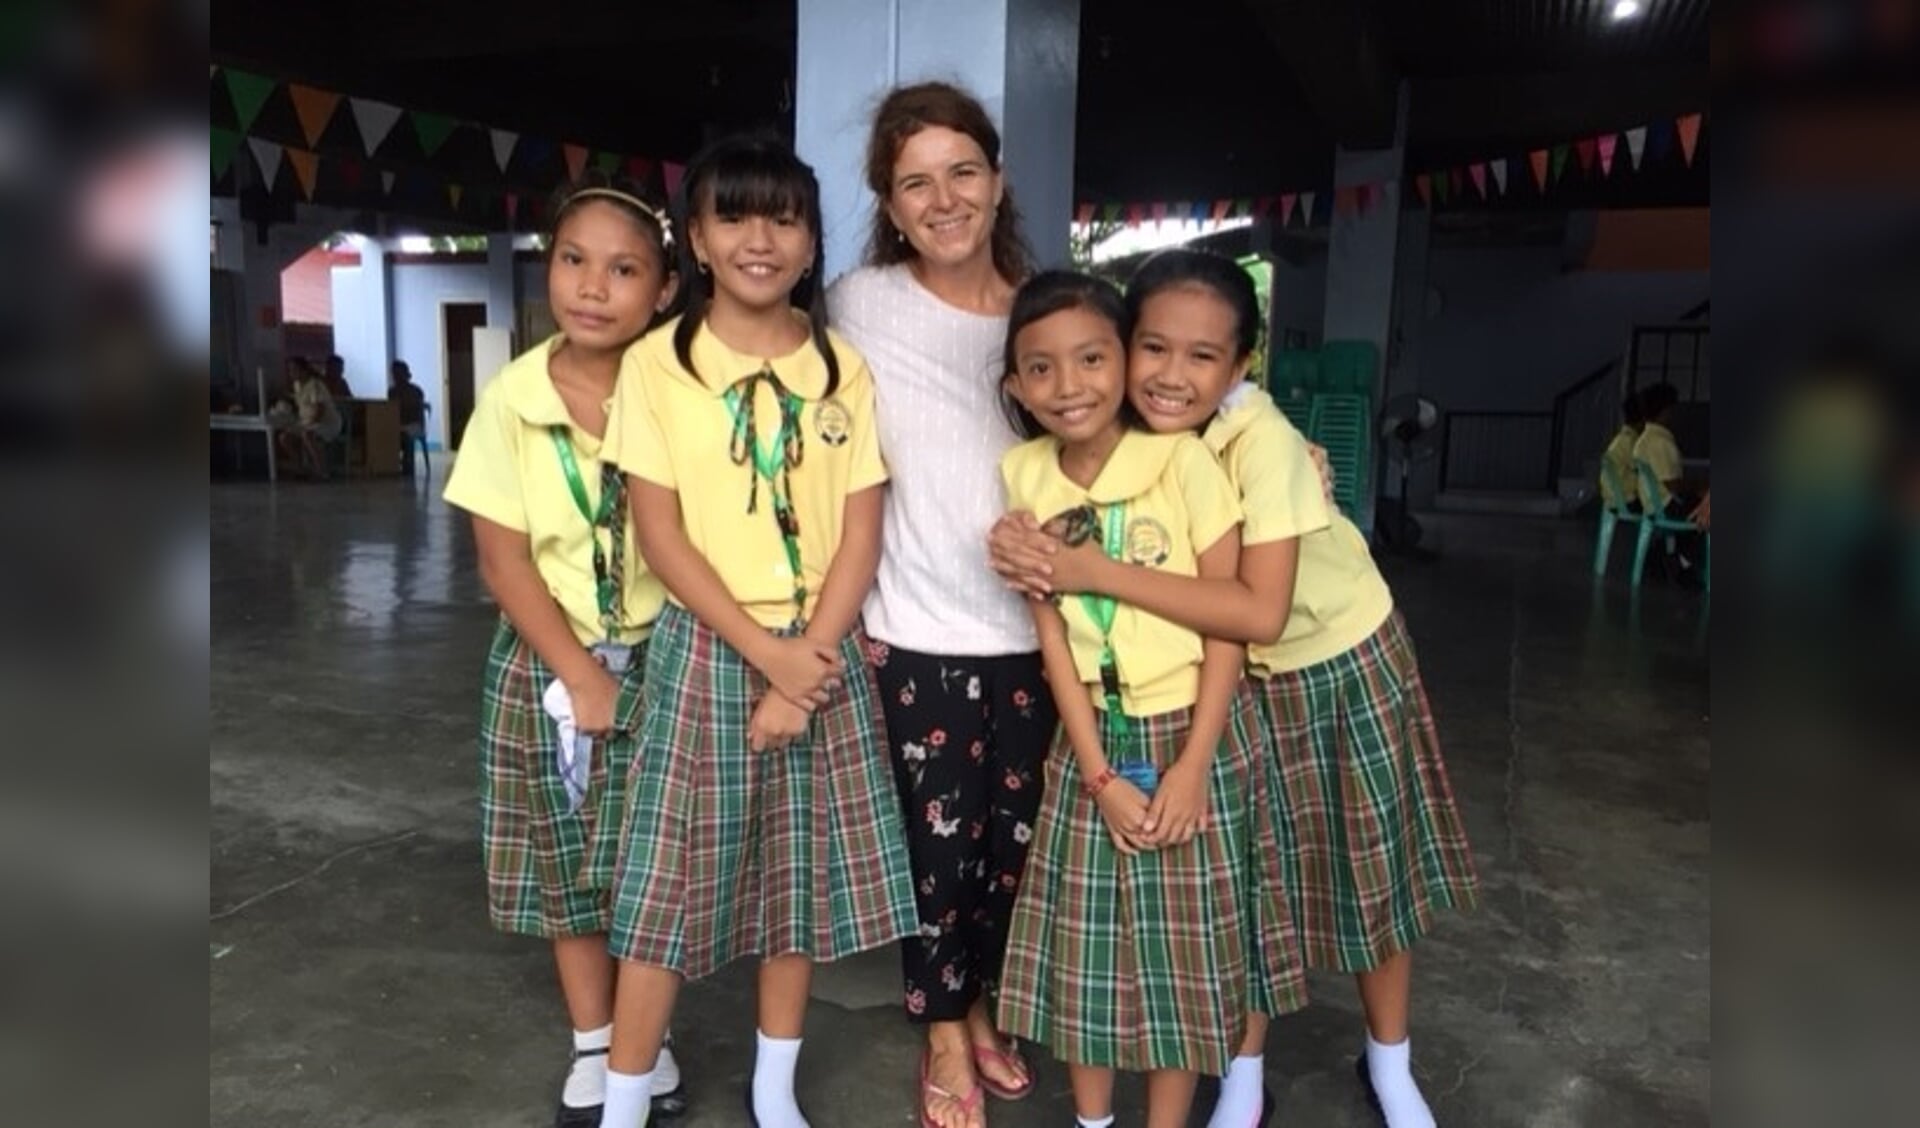 Docente Miranda van Loon met 4 leerlingen van de Papaya Academy in Manilla. FOTO PETER VAN SCHIJNDEL